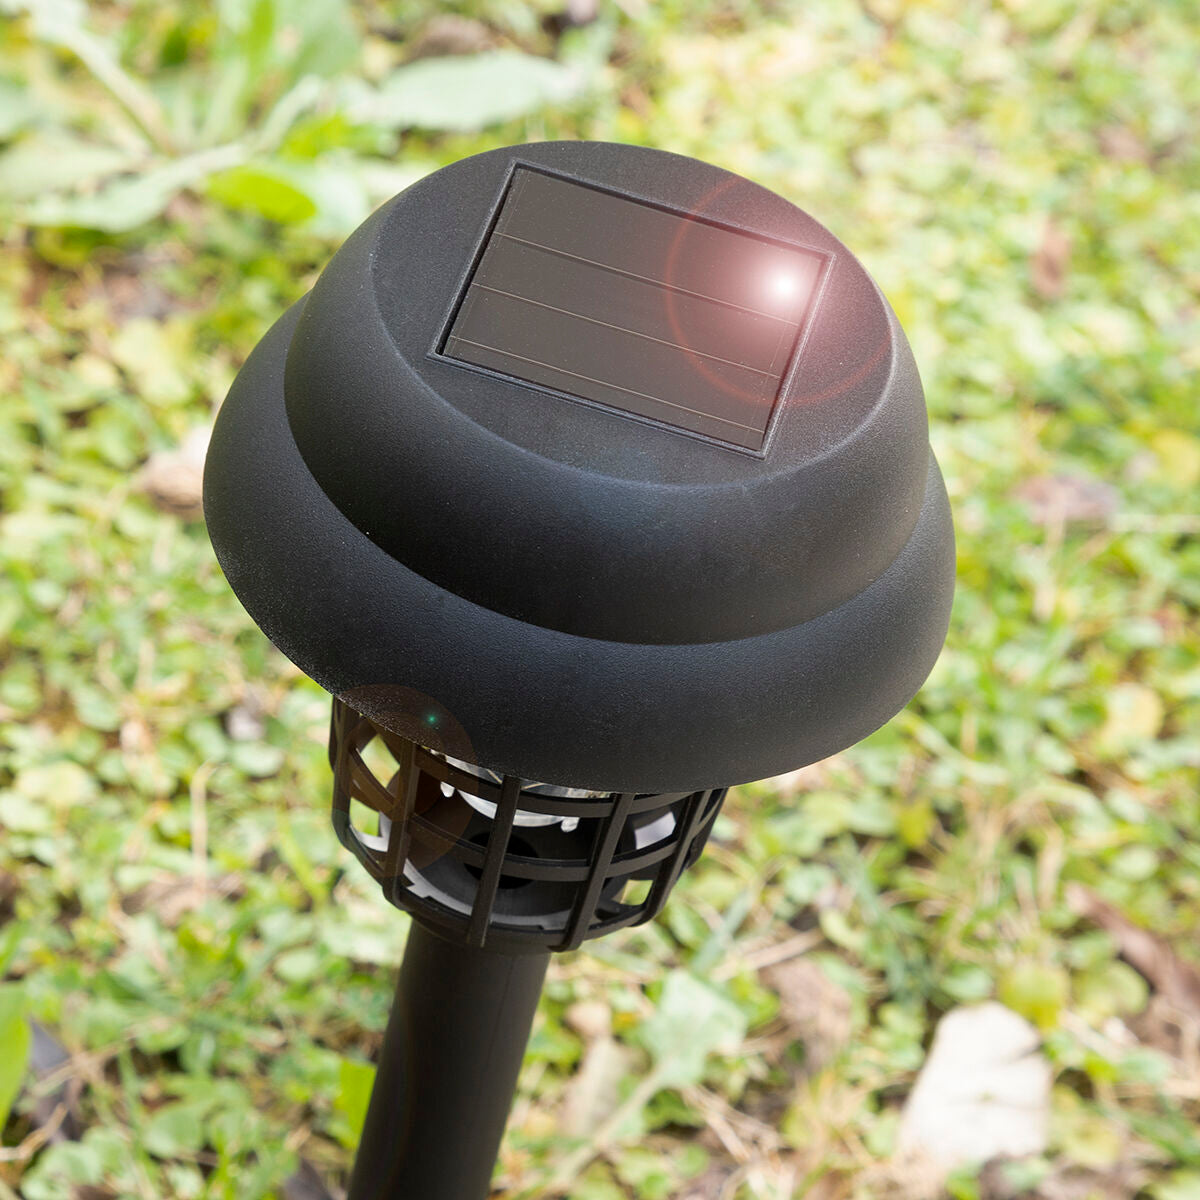 Muggendodende tuinlamp die werkt op zonne-energie Garlam InnovaGoods